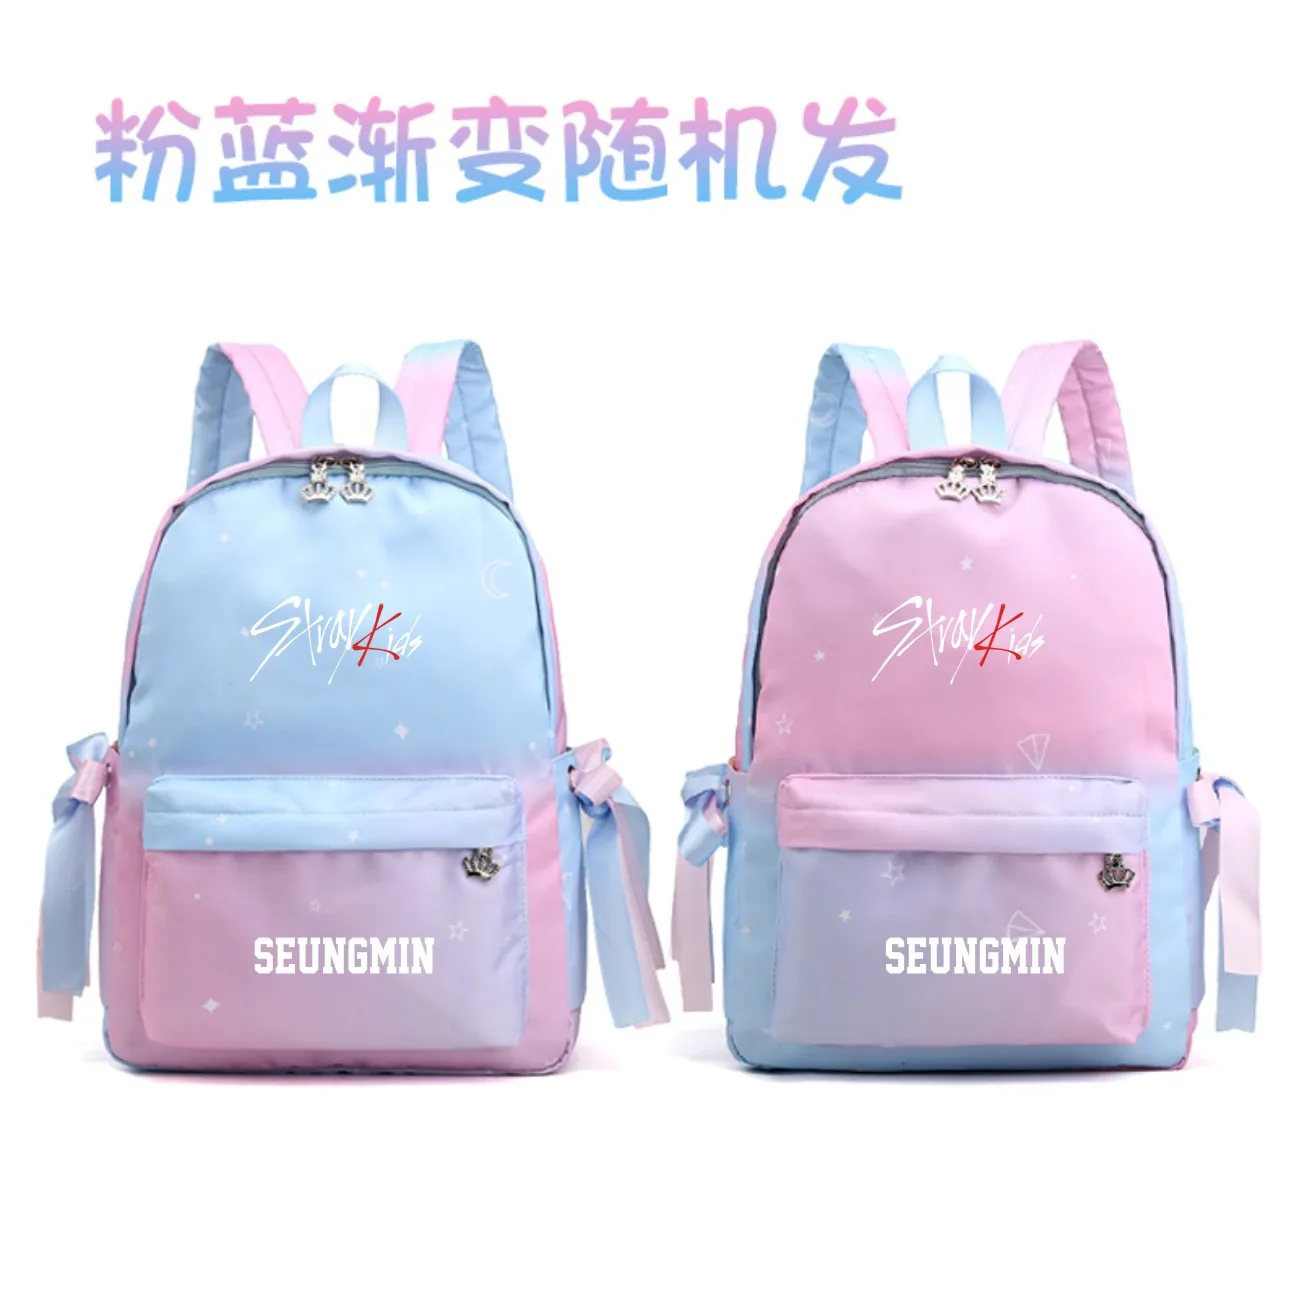 1 шт. Kpop бродячий Детский рюкзак розовый синий градиентный цвет водонепроницаемый студенческий рюкзак школьный креативный бродячий детский kpop поставки милые - Цвет: Seung Min